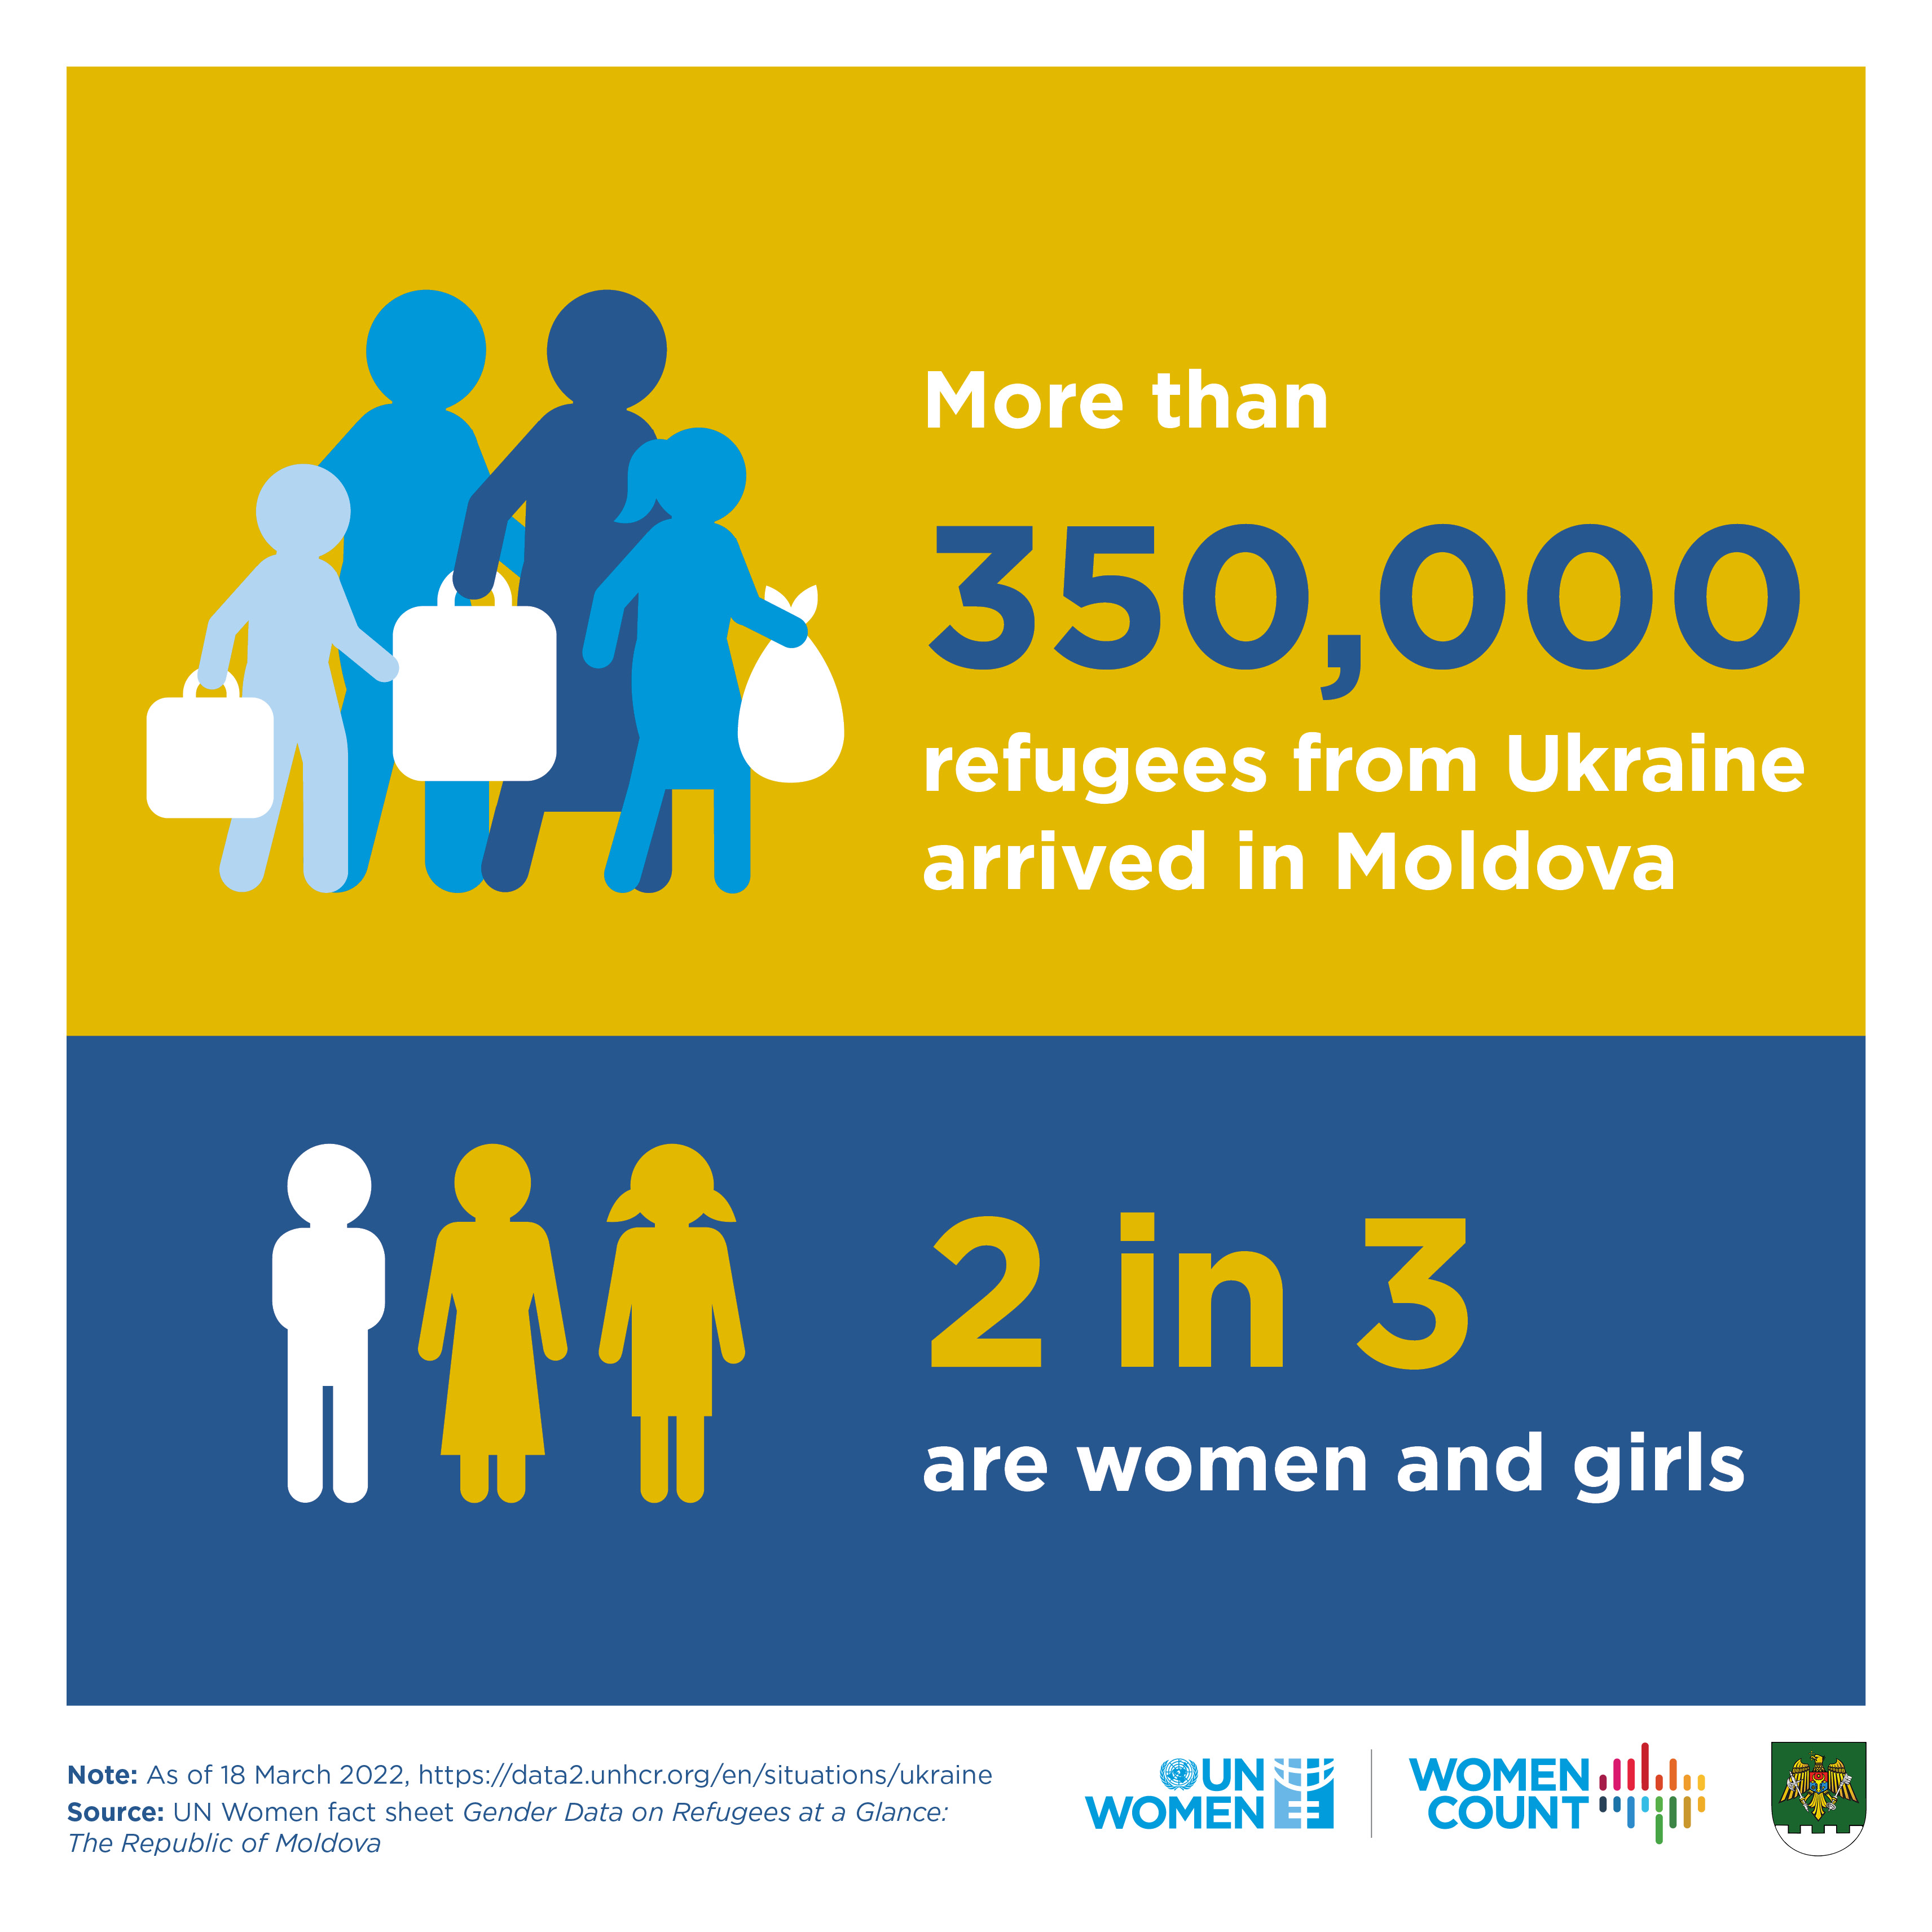 Profilul refugiaților din perspectiva de gen: Republica Moldova